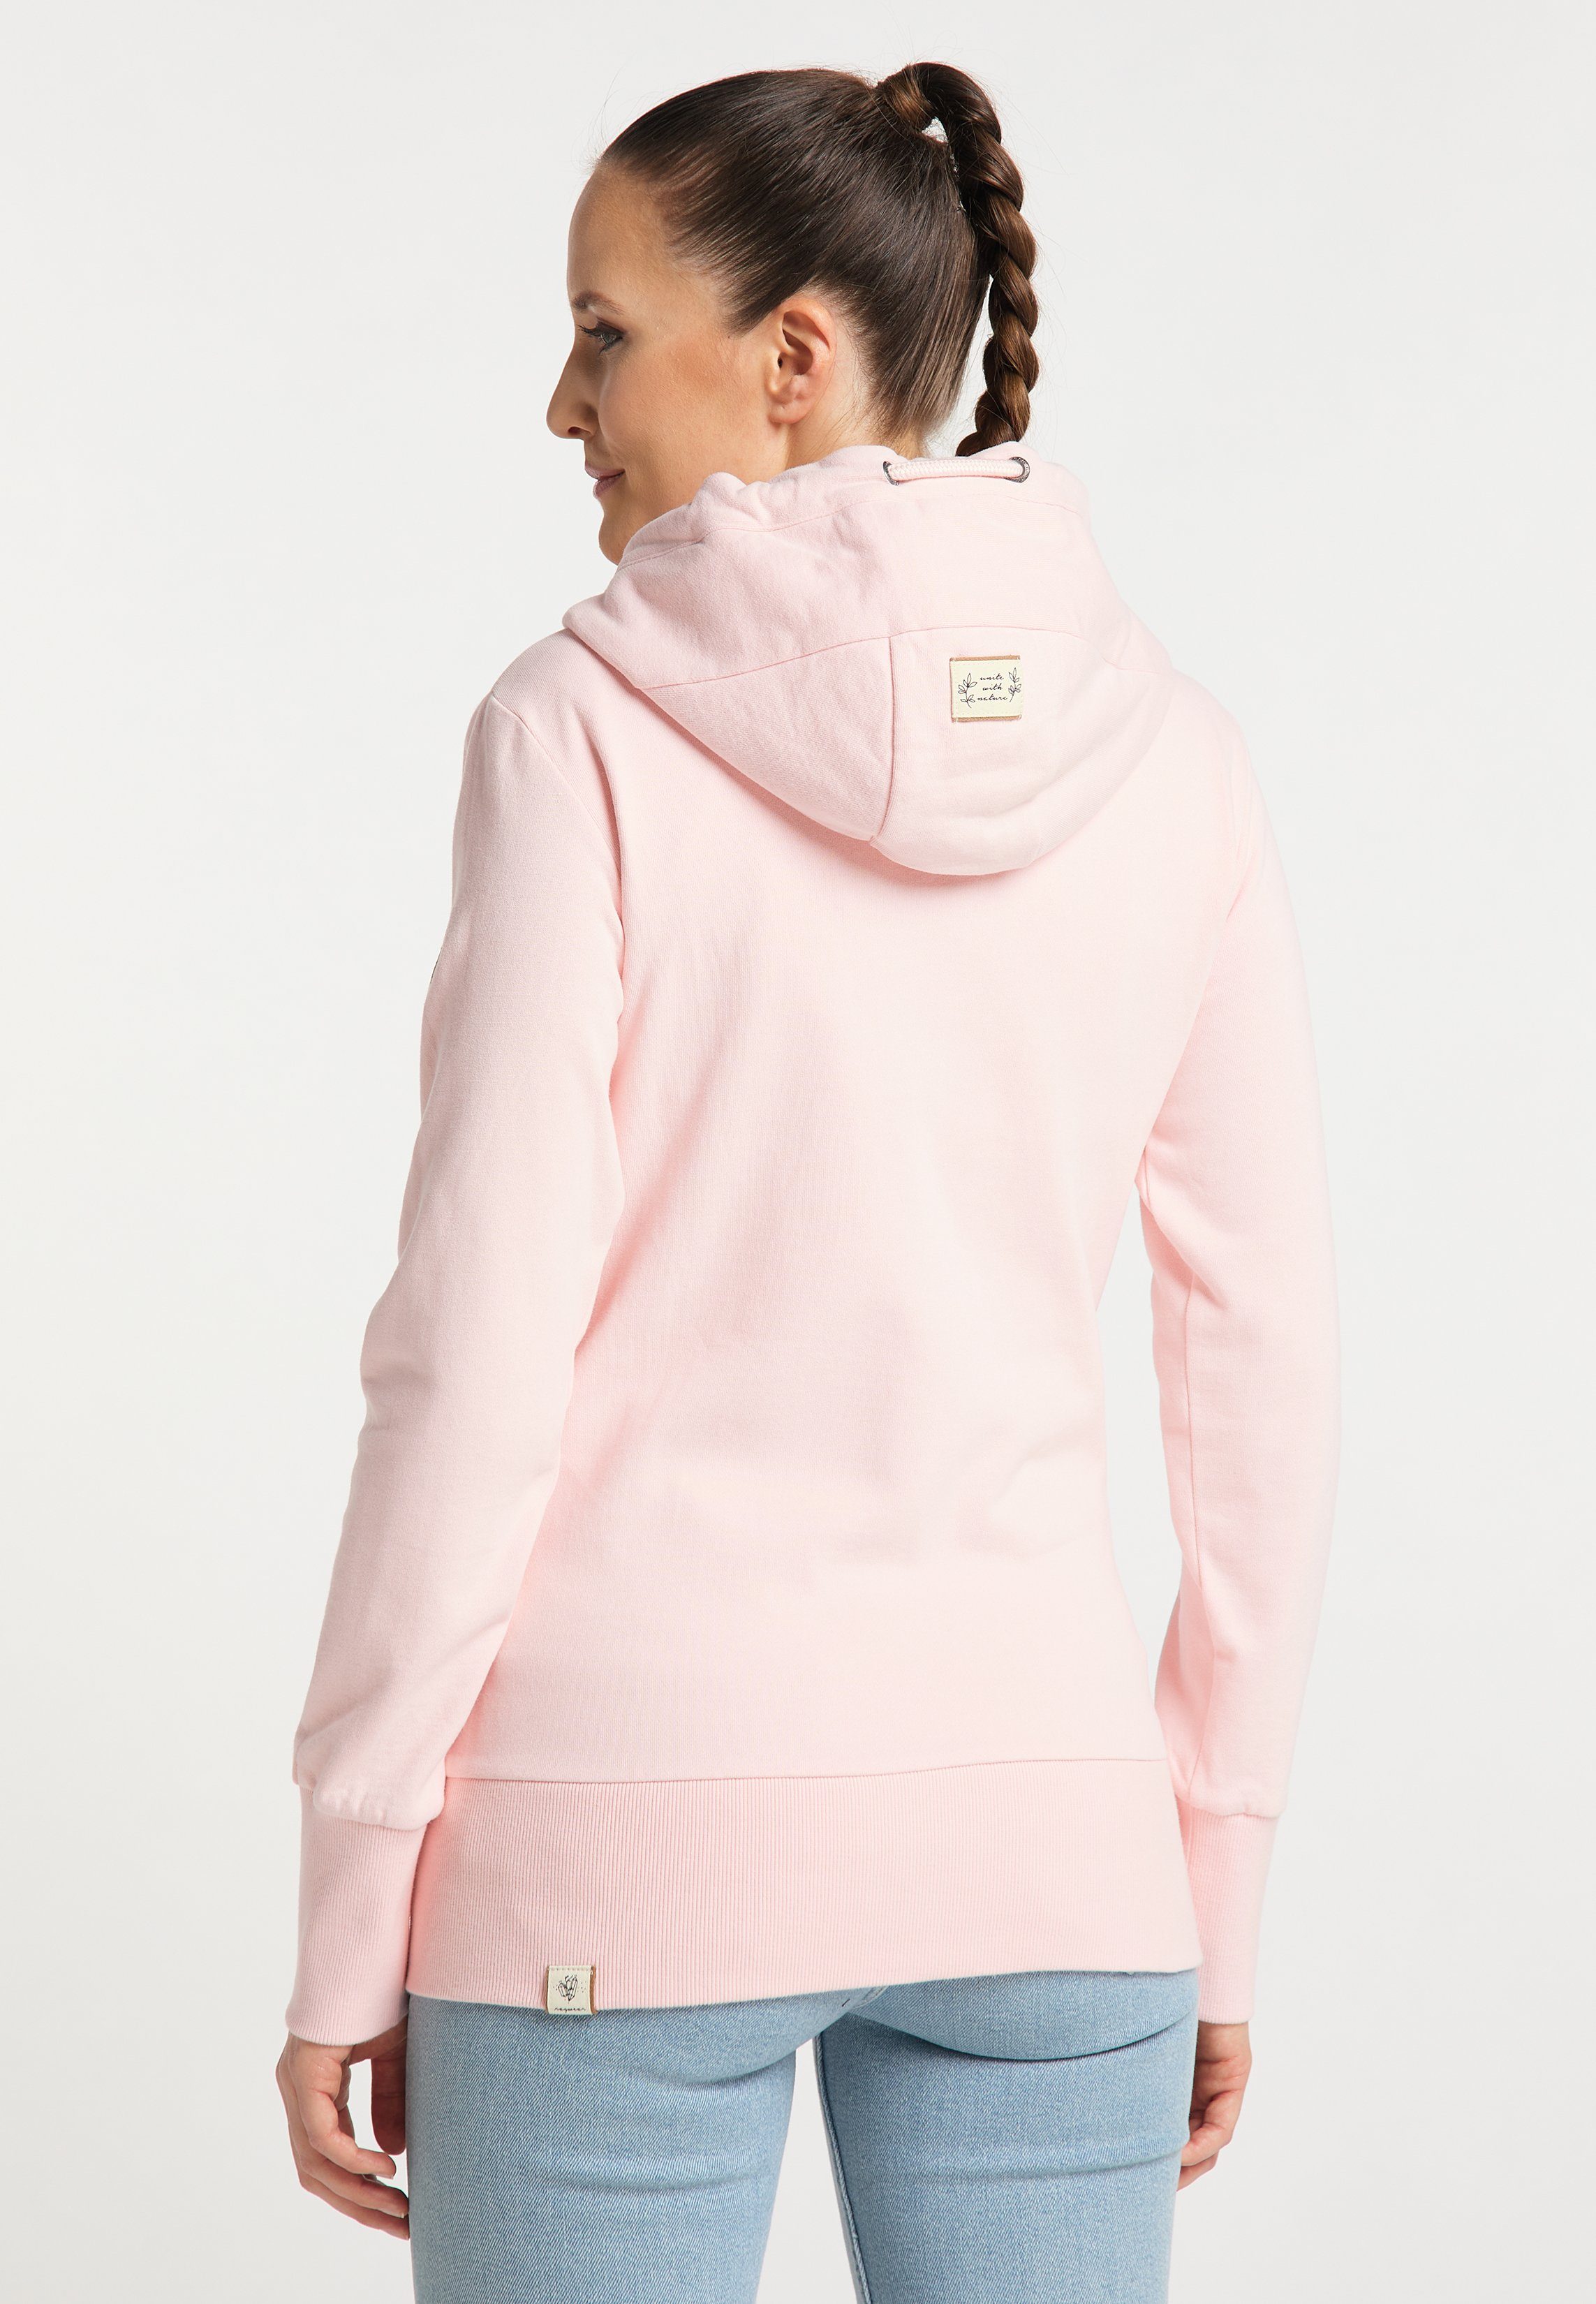 PINK Ragwear Mode YODA Sweatshirt ORGANIC LIGHT & Nachhaltige Vegane CRYSTAL